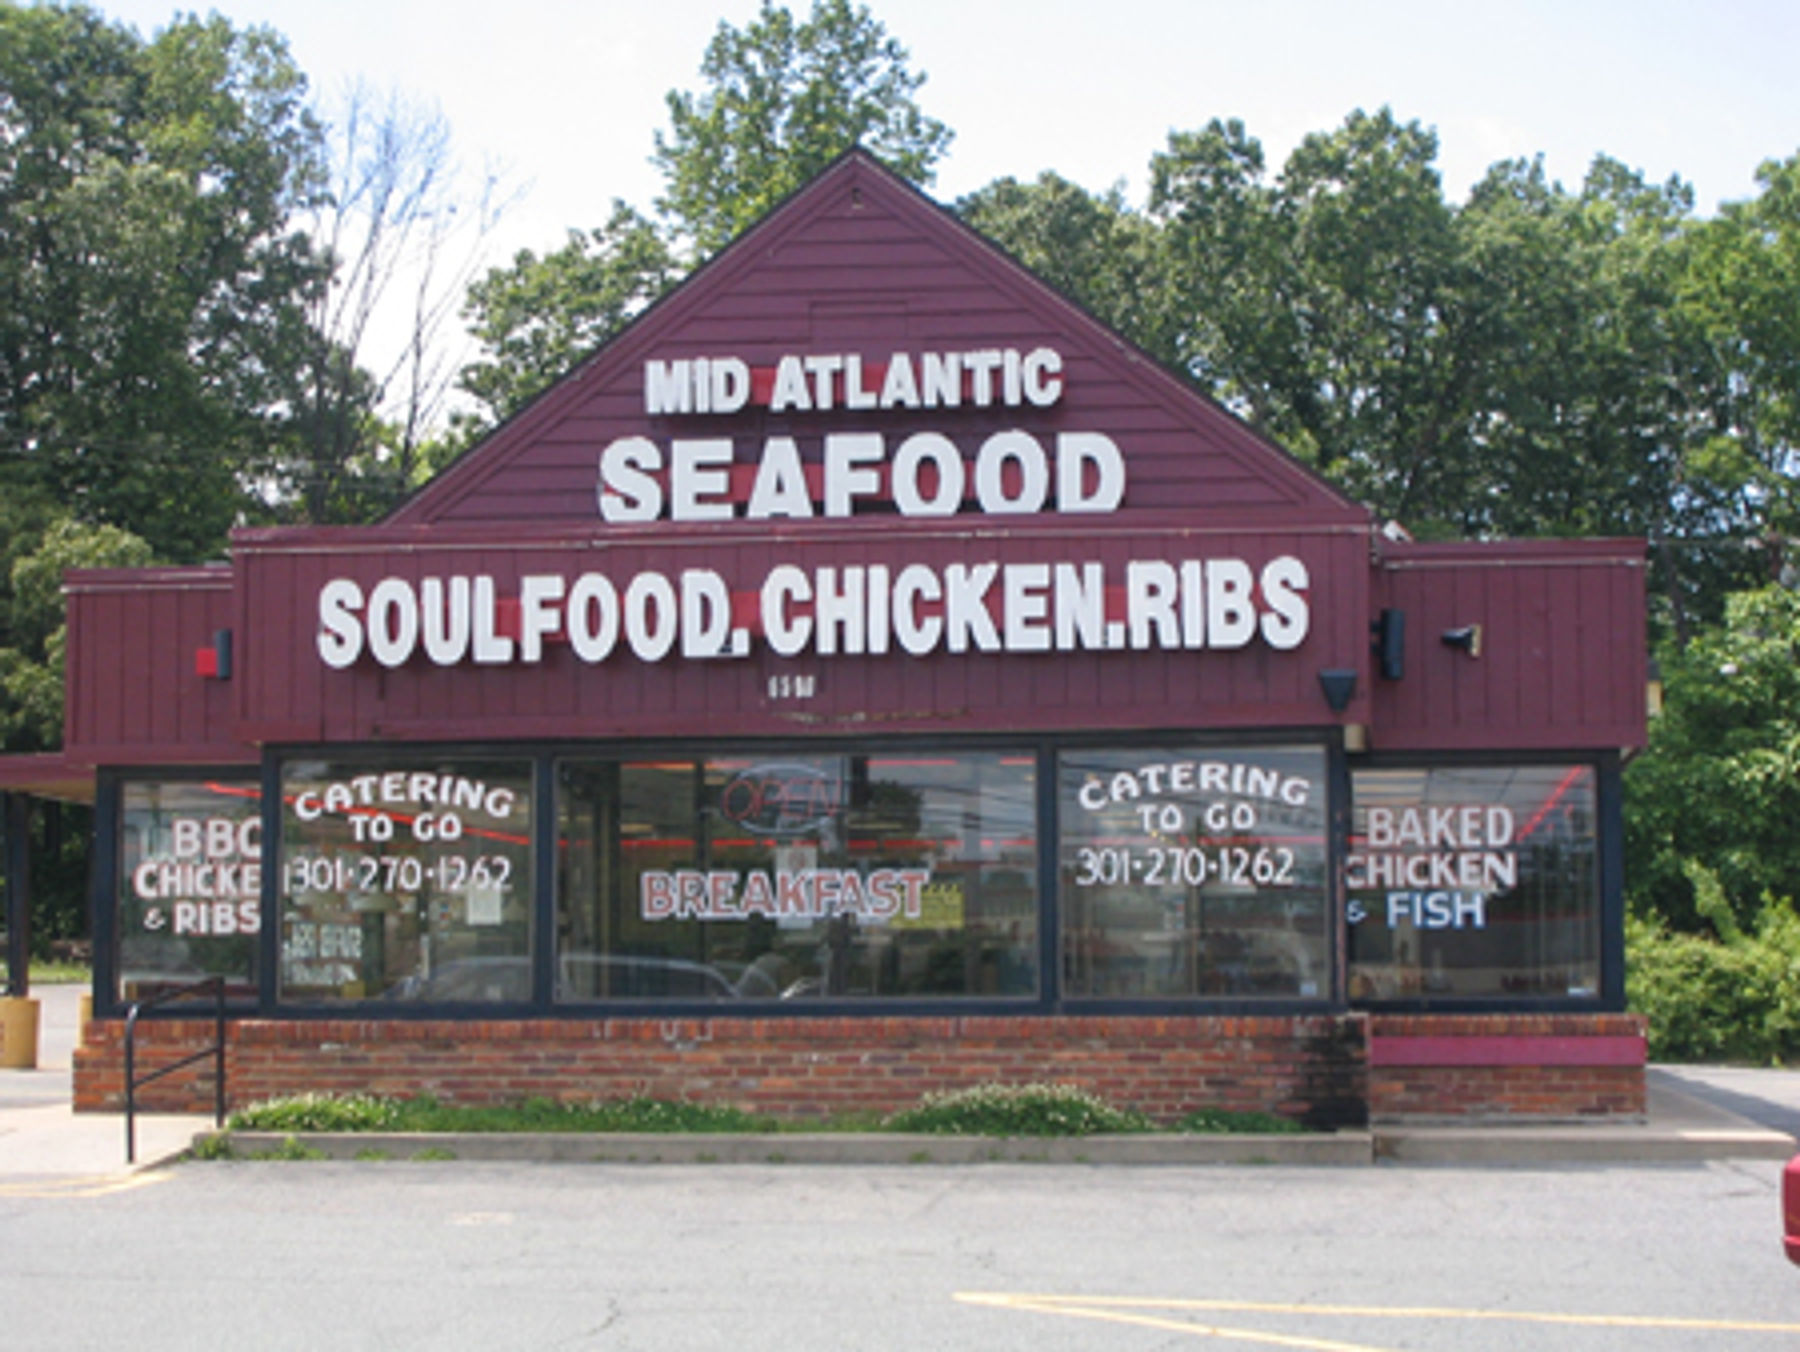 mid atlantic seafood and soul food